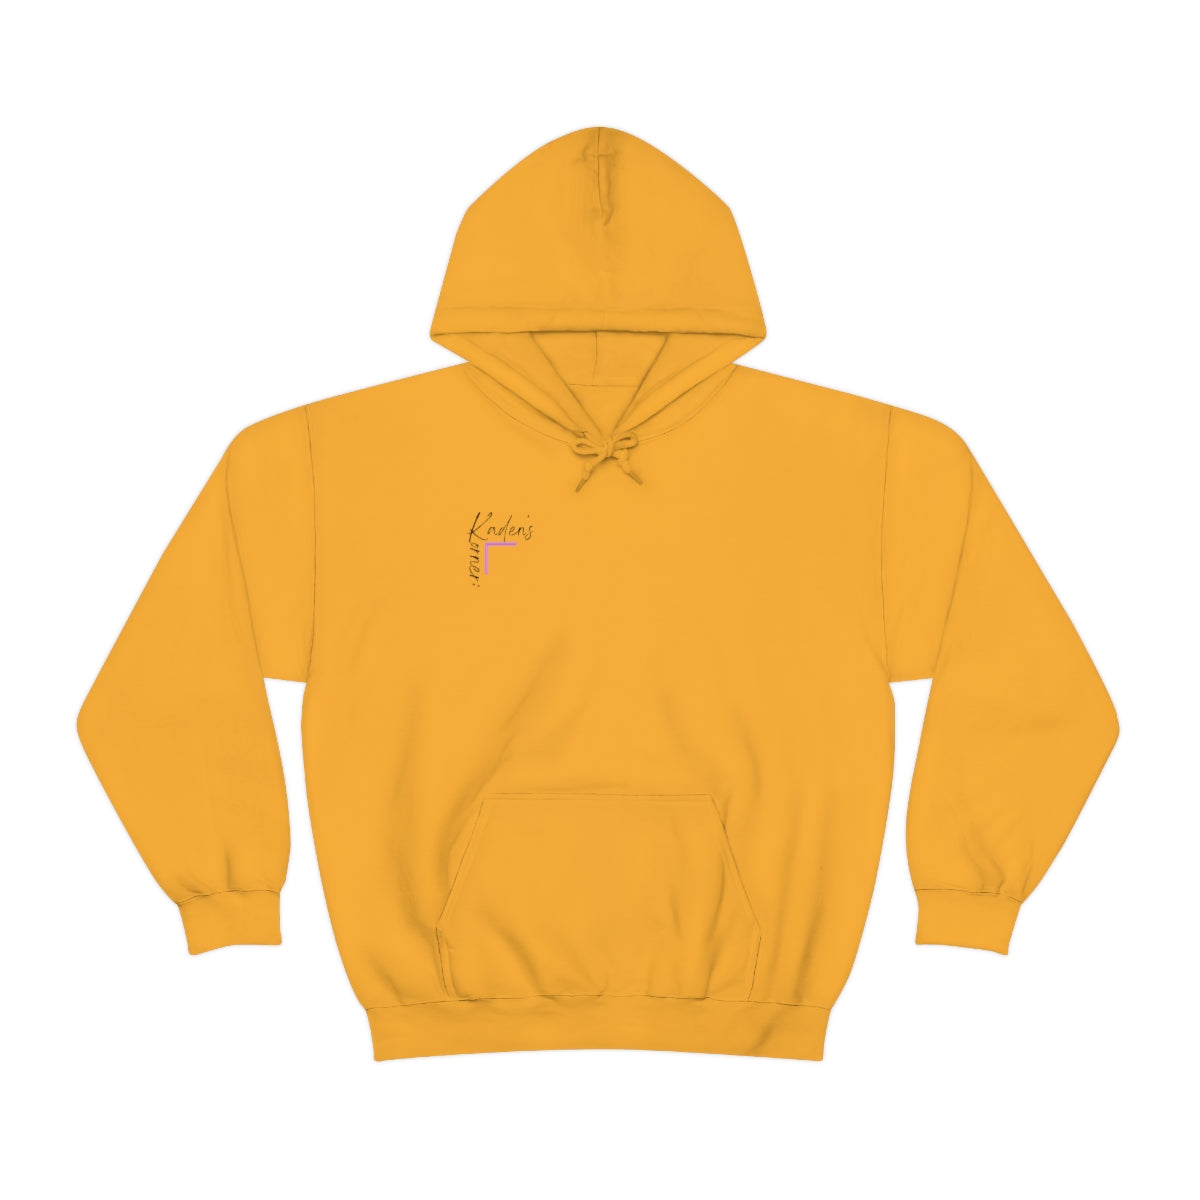 Tomorrow needs you*Unisex Heavy Blend™ Hooded Sweatshirt